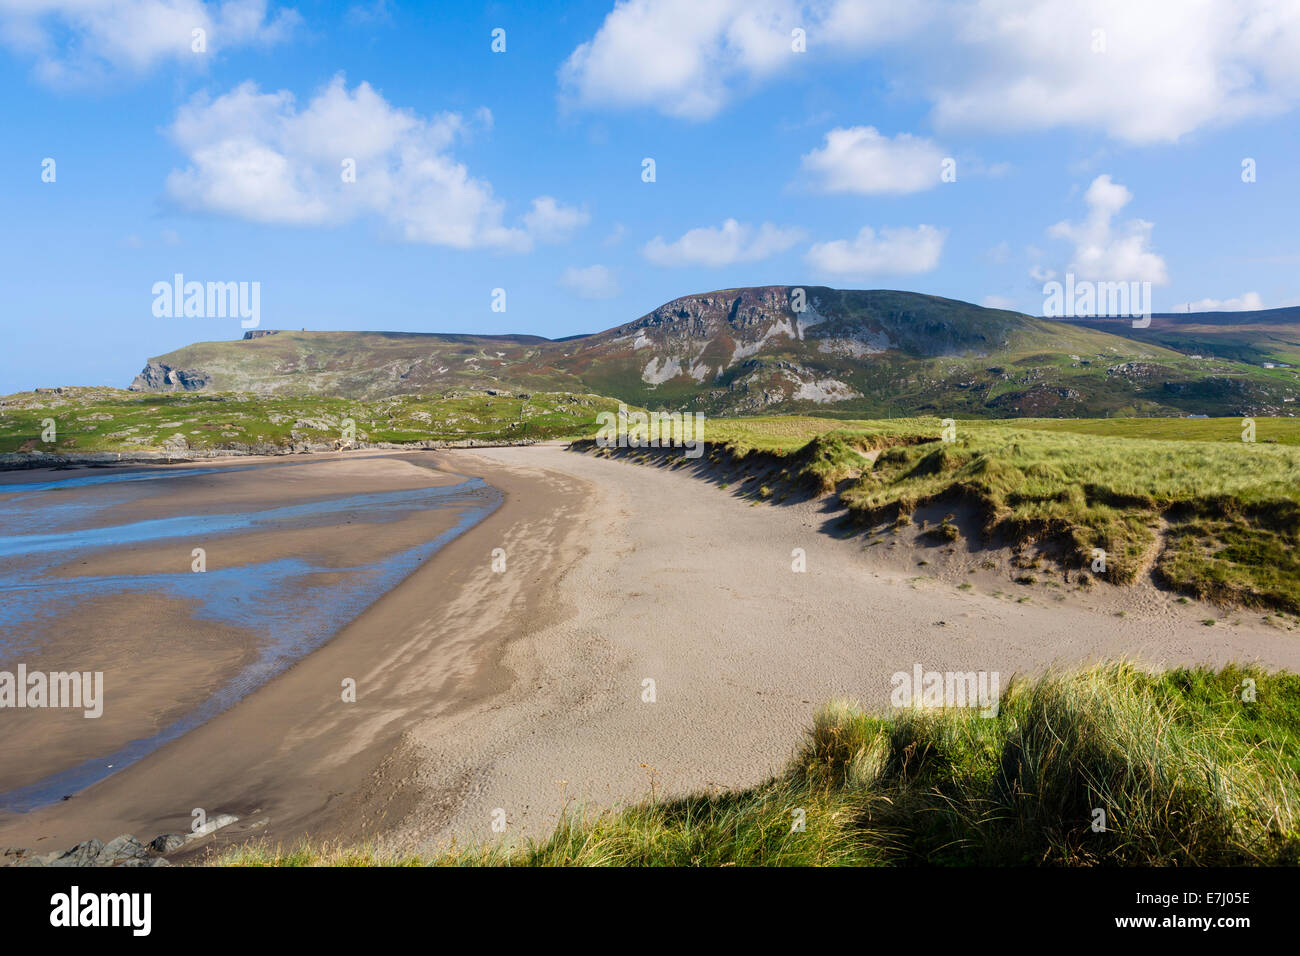 Spiaggia a Doonalt, Glencolumbkille (o Glencolmcille), County Donegal, Repubblica di Irlanda Foto Stock